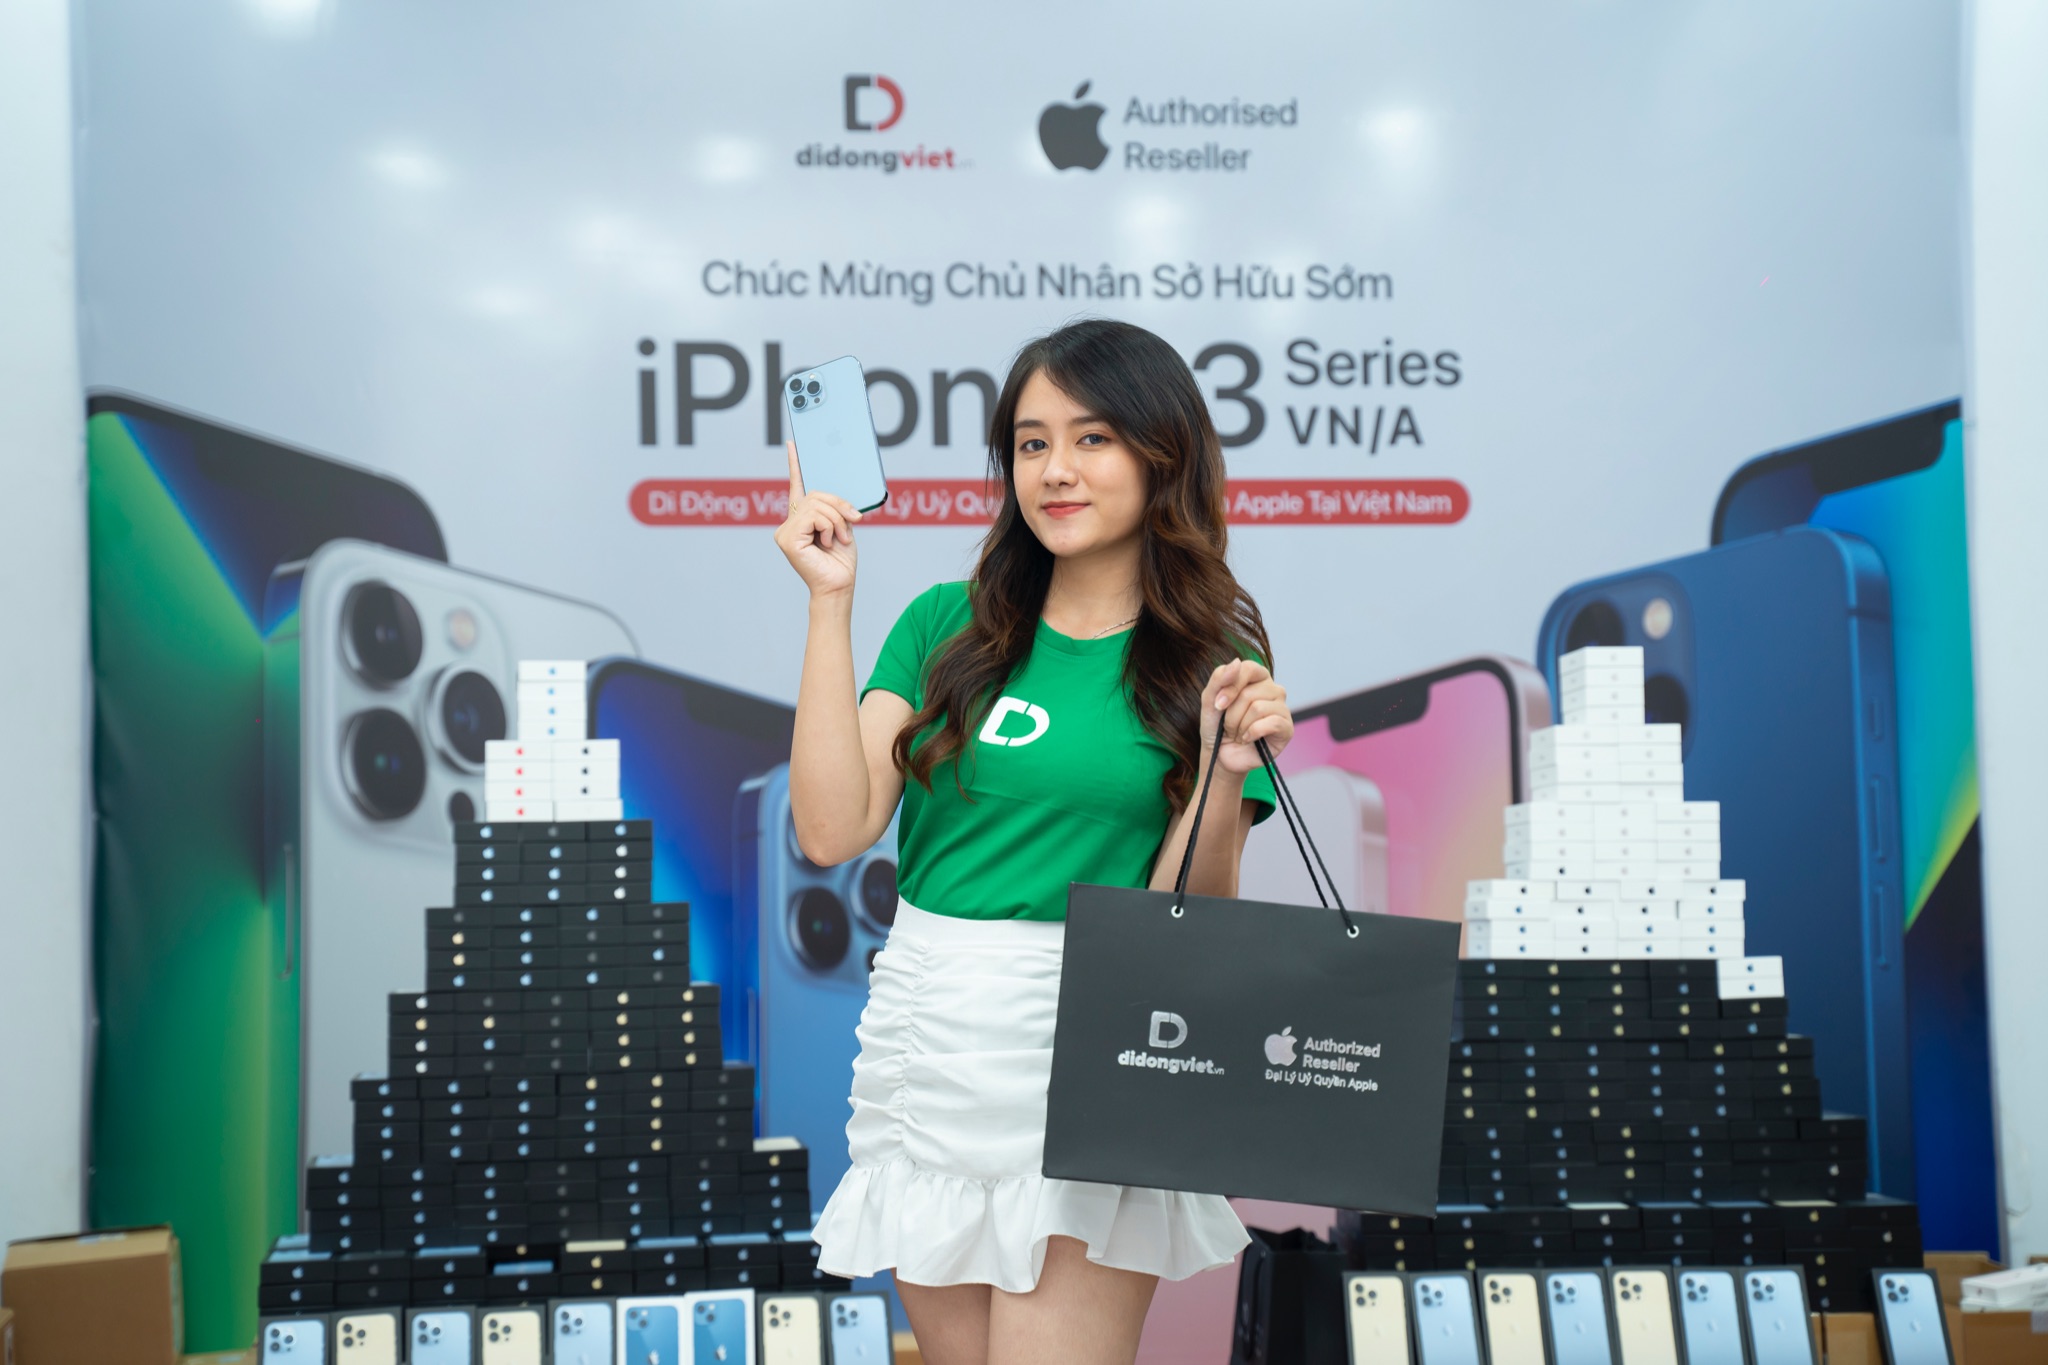 Di Động Việt chuẩn bị iPhone 13 series VN/A, sẵn sàng ngày mở bán rạng sáng 22/10